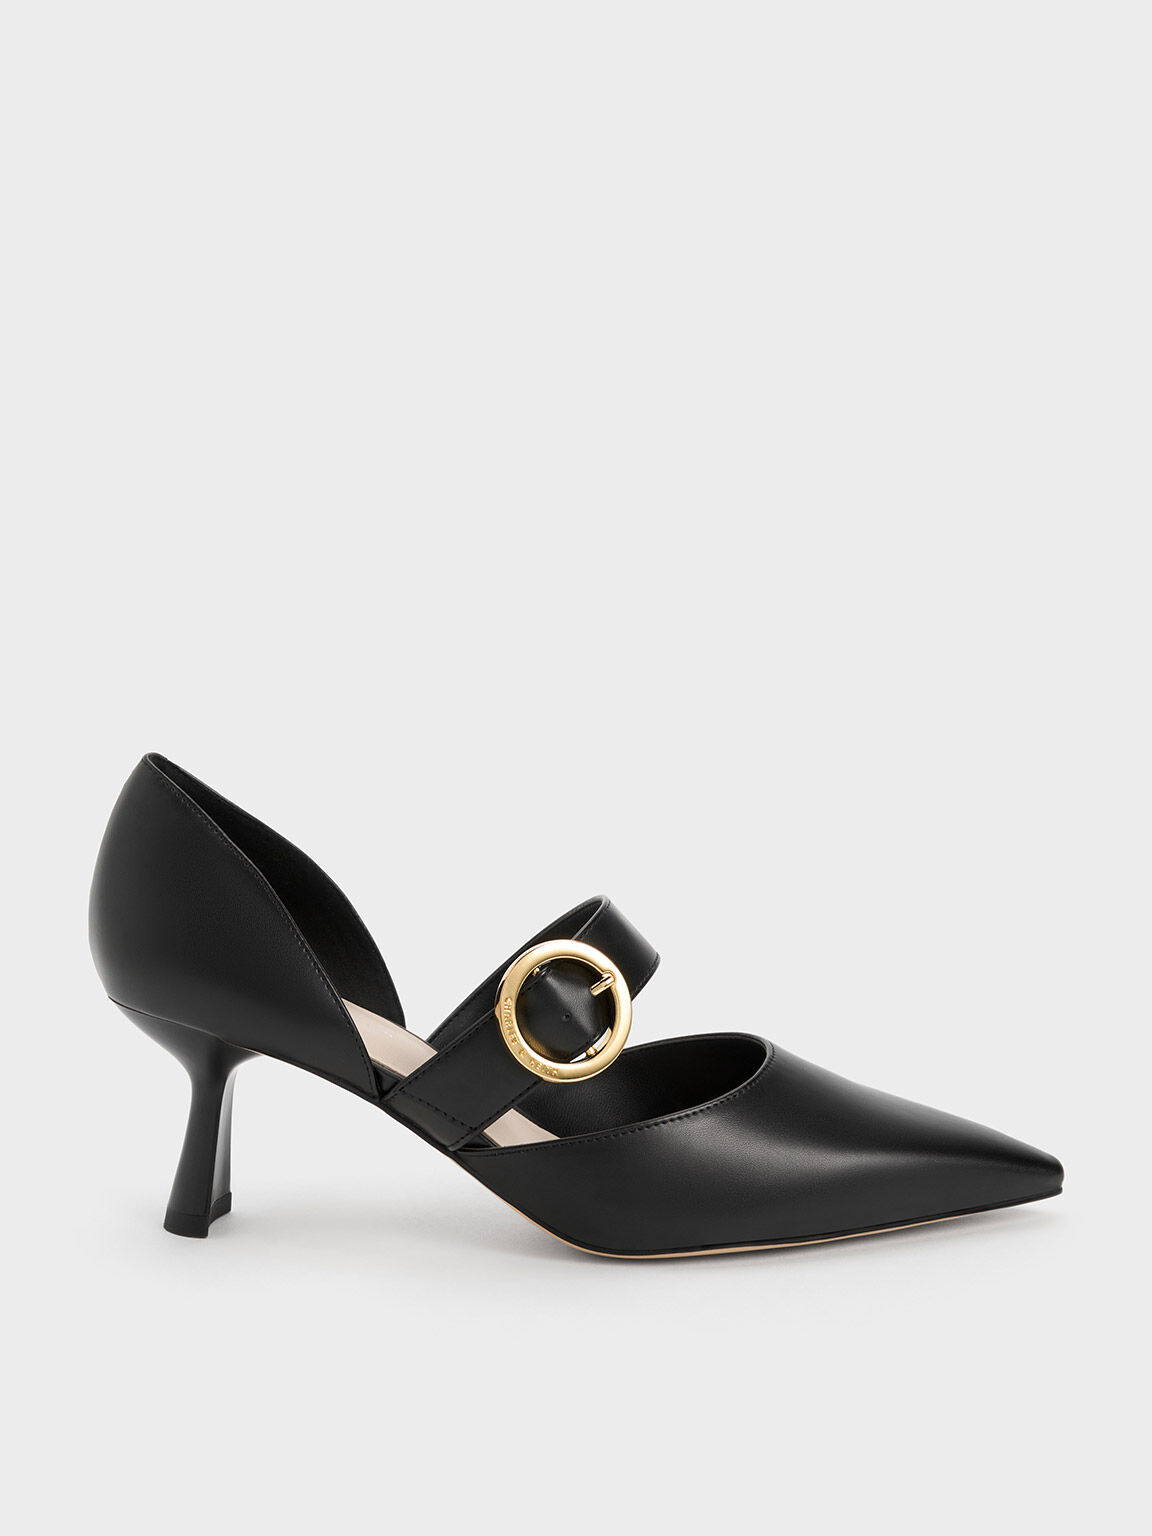 Zapatos de Tacón D'Orsay con Hebilla, Black, hi-res